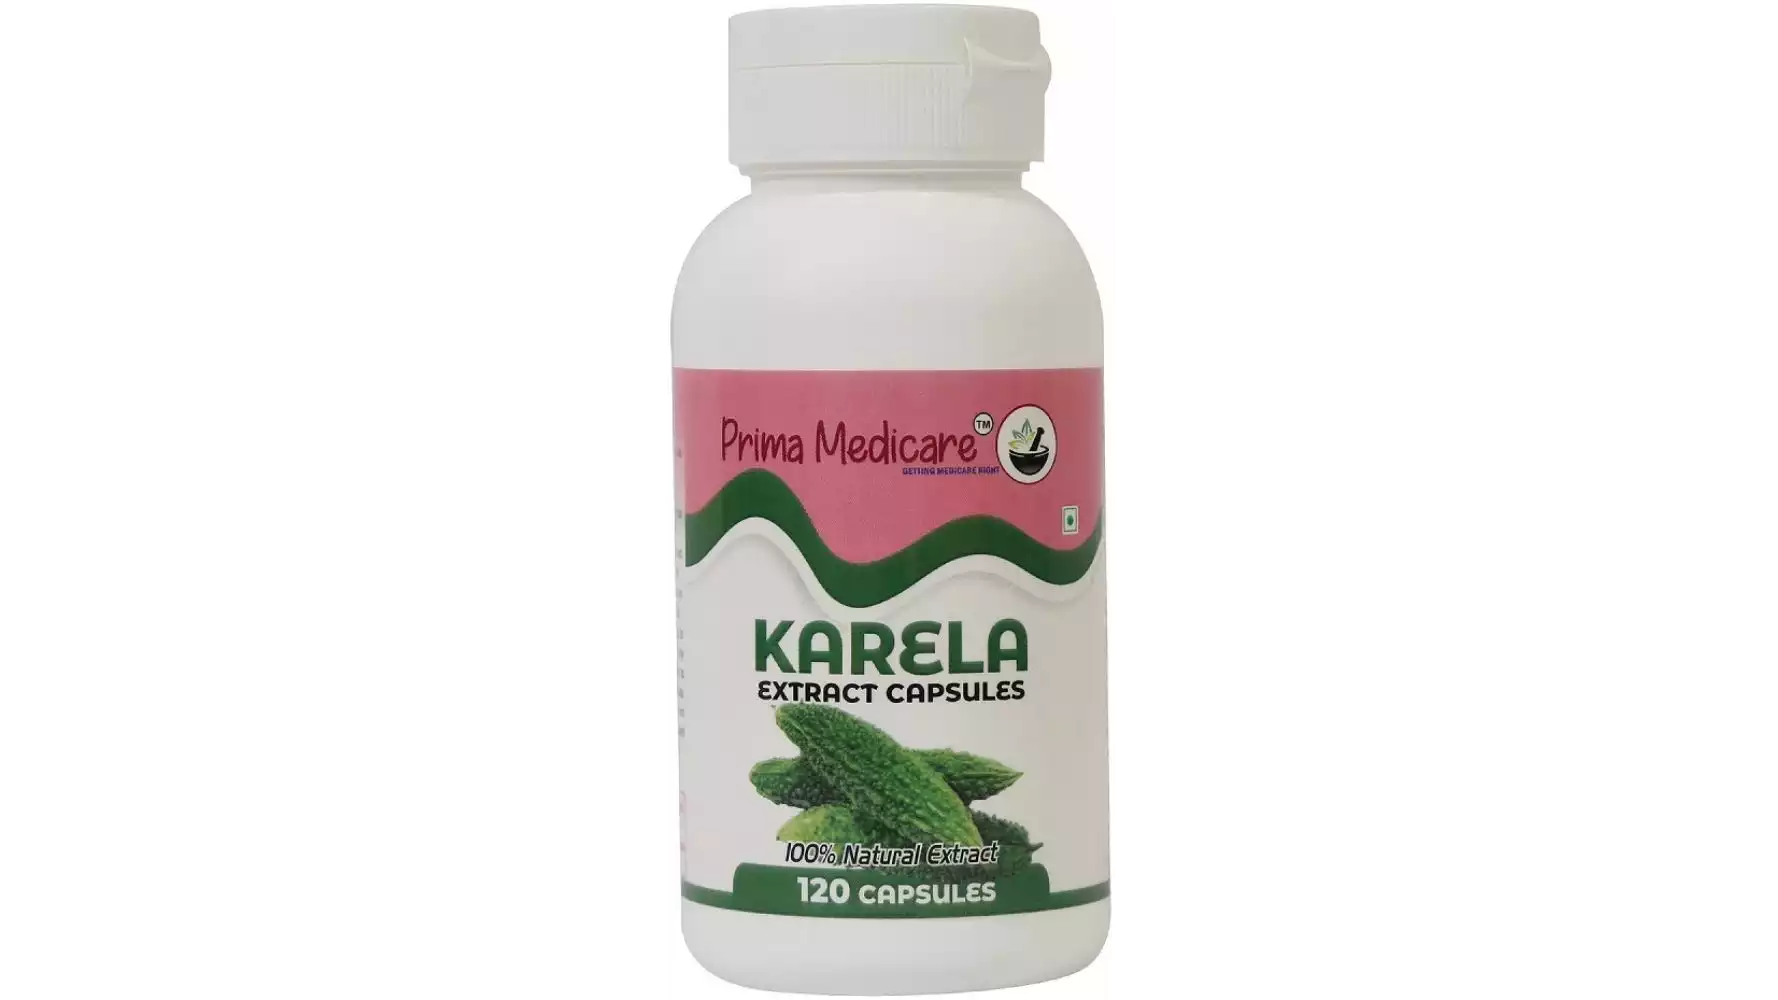 Prima Medicare Karela Extract Capsules (120caps)